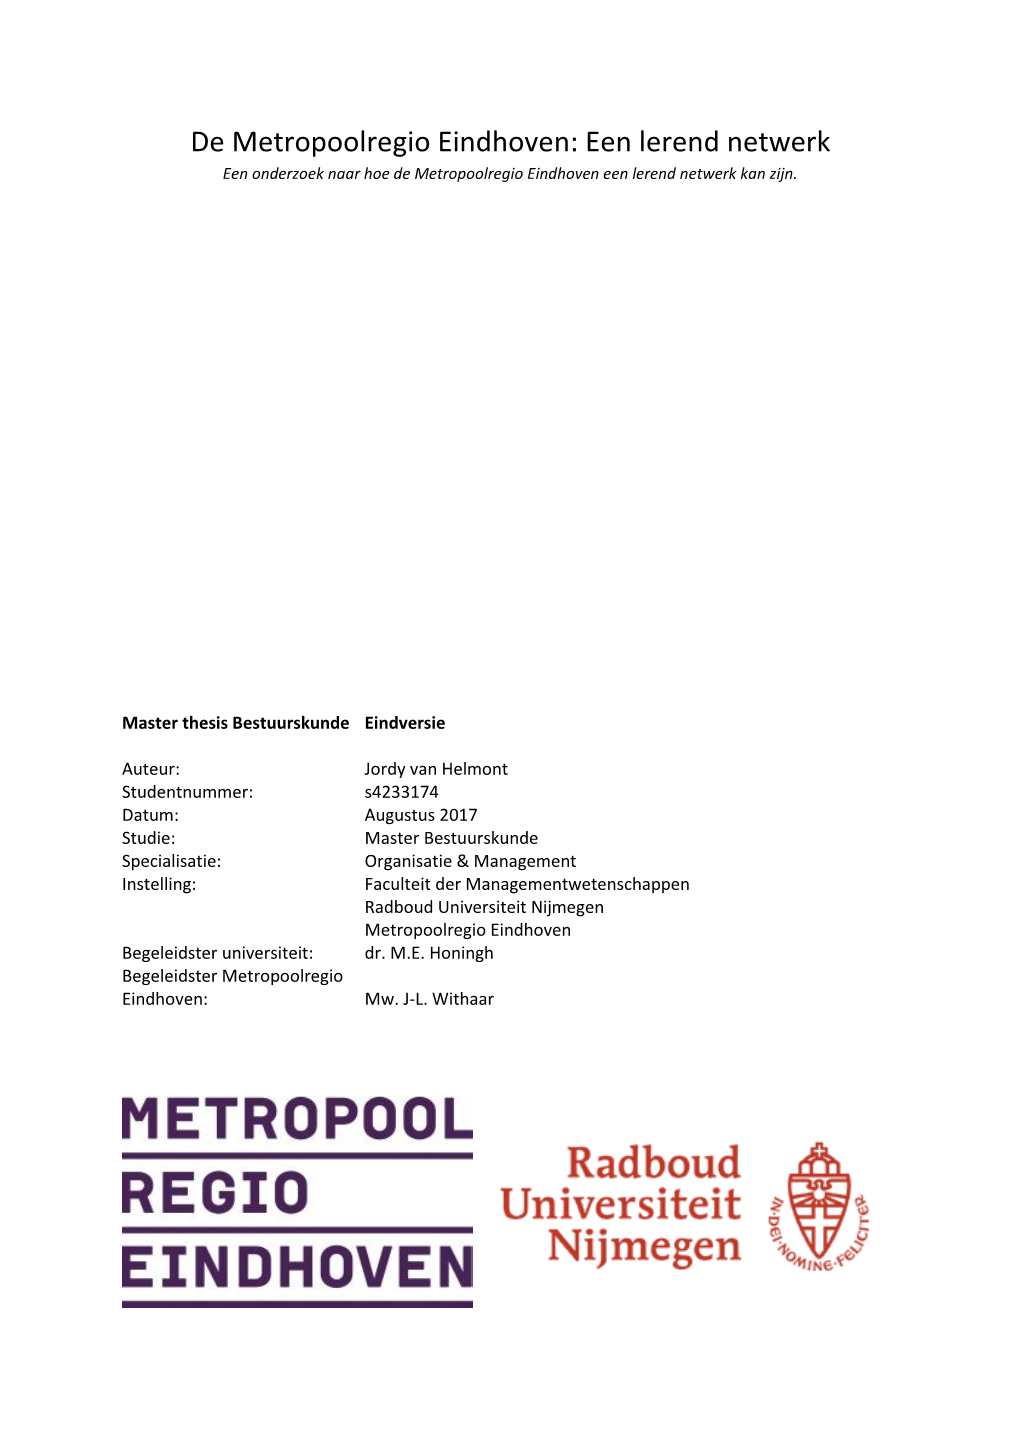 De Metropoolregio Eindhoven: Een Lerend Netwerk Een Onderzoek Naar Hoe De Metropoolregio Eindhoven Een Lerend Netwerk Kan Zijn